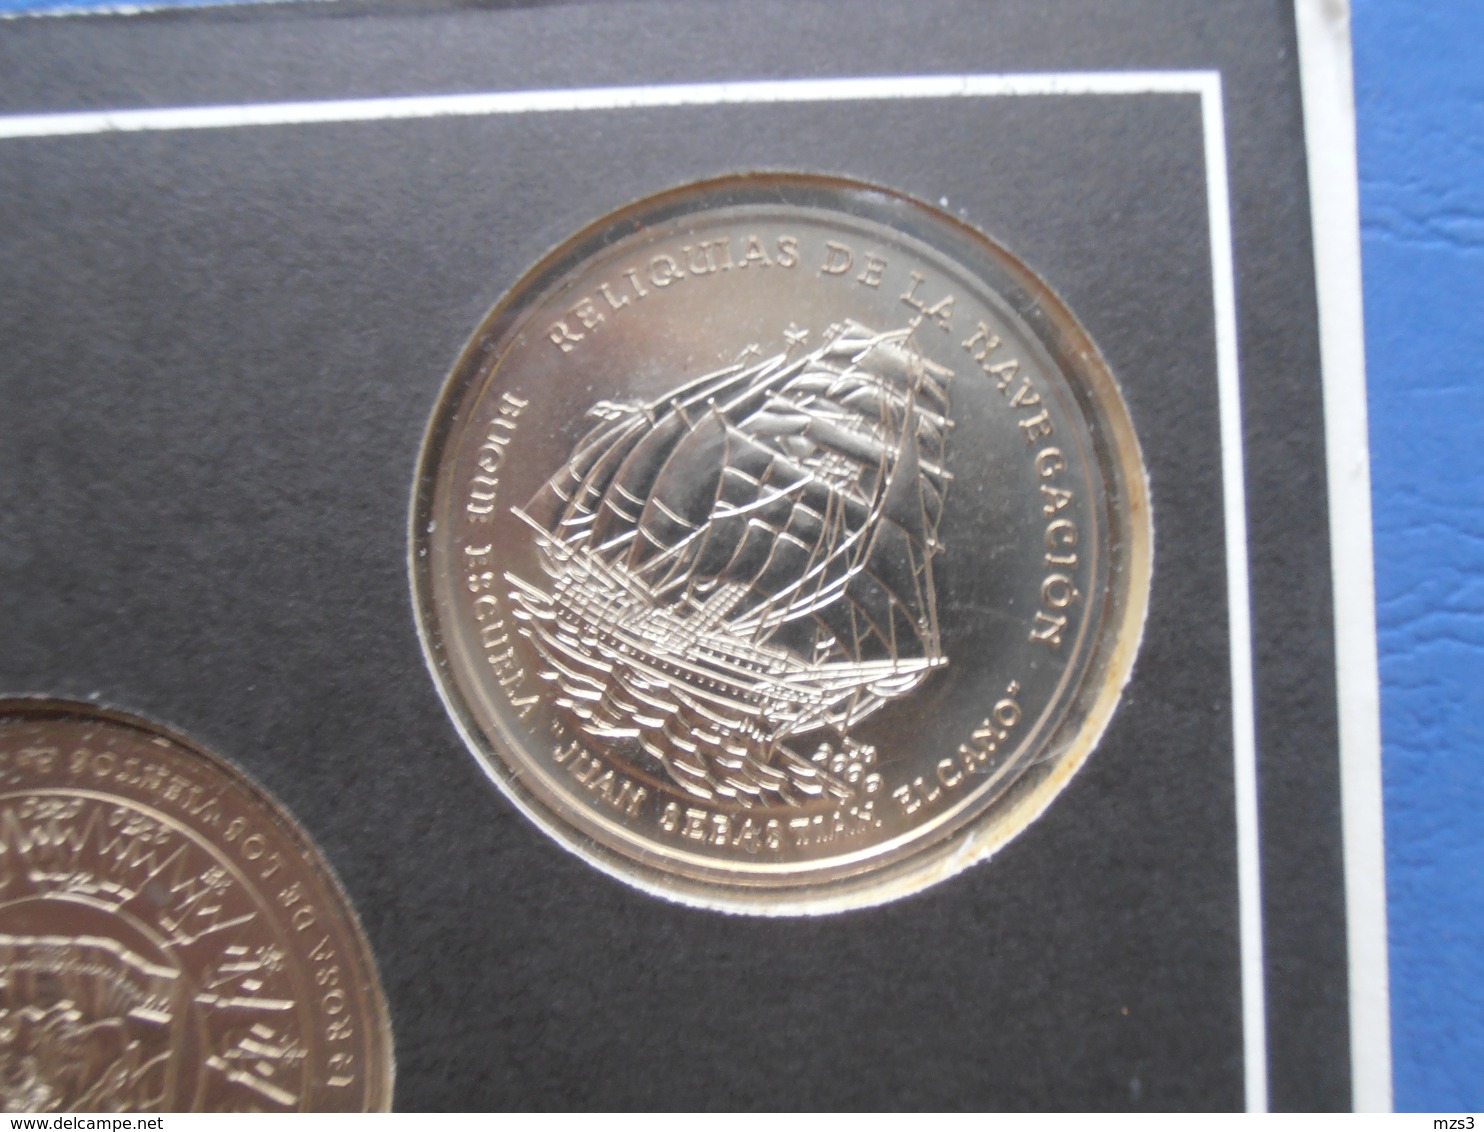 CUBA 5 coins of 1 PESO 2000 "RELIQUIAS DE LA NAVEGATION" BU